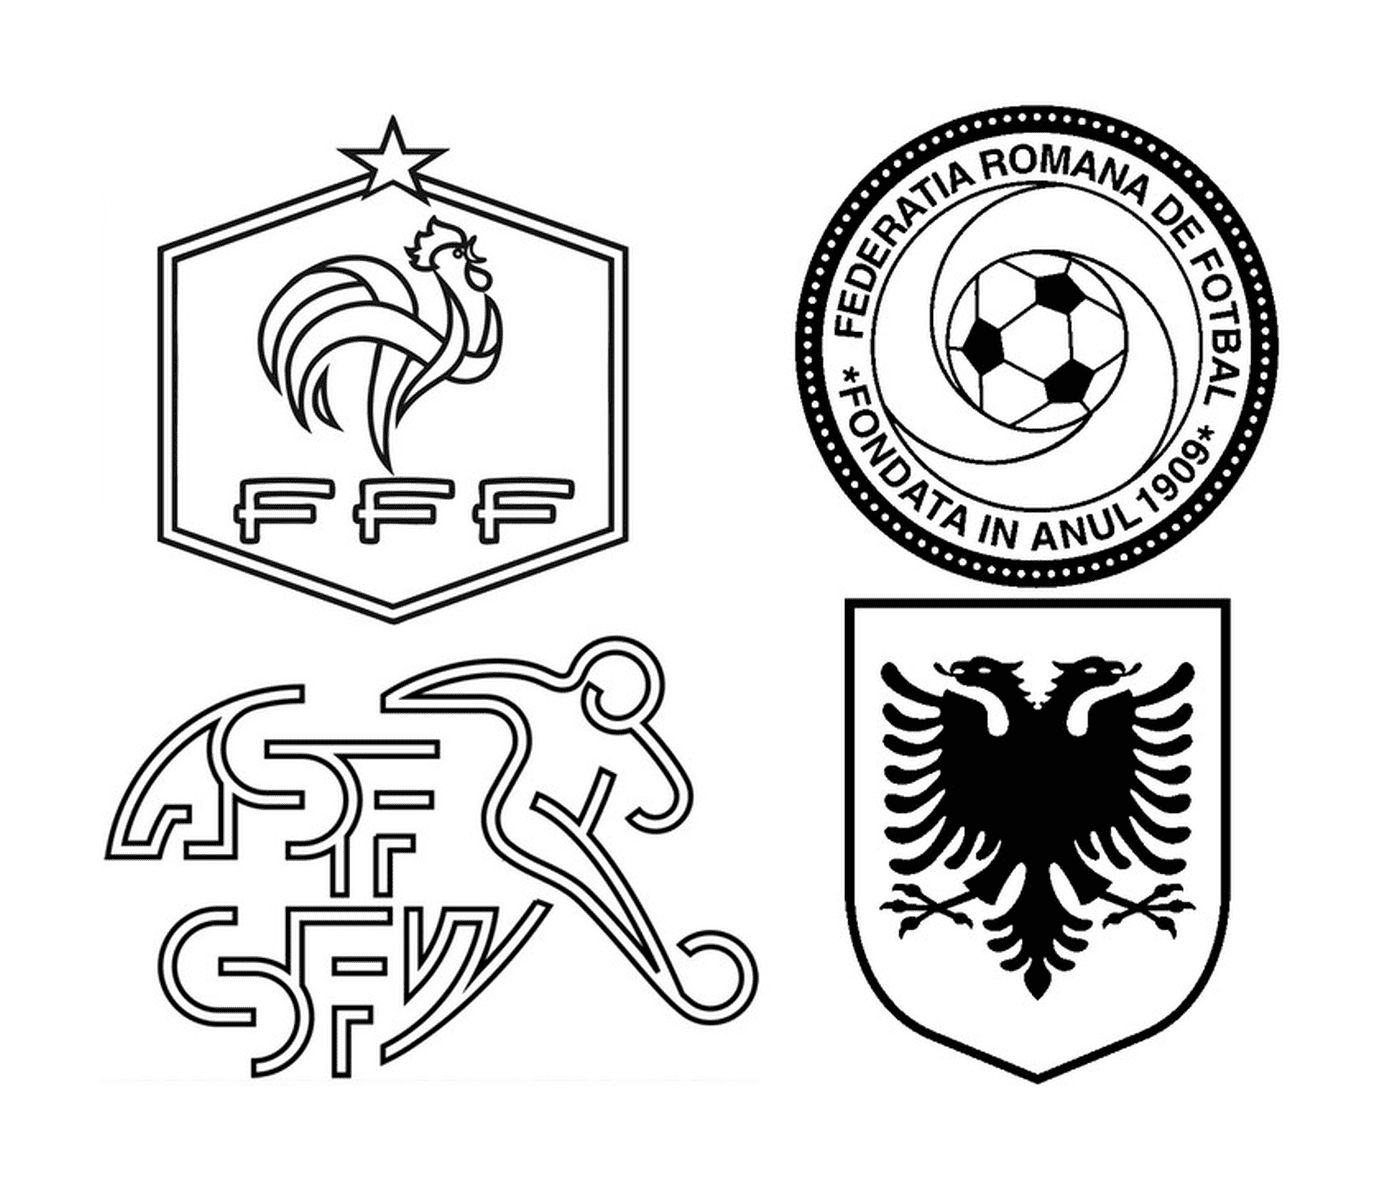  Los logos de cuatro equipos de fútbol 